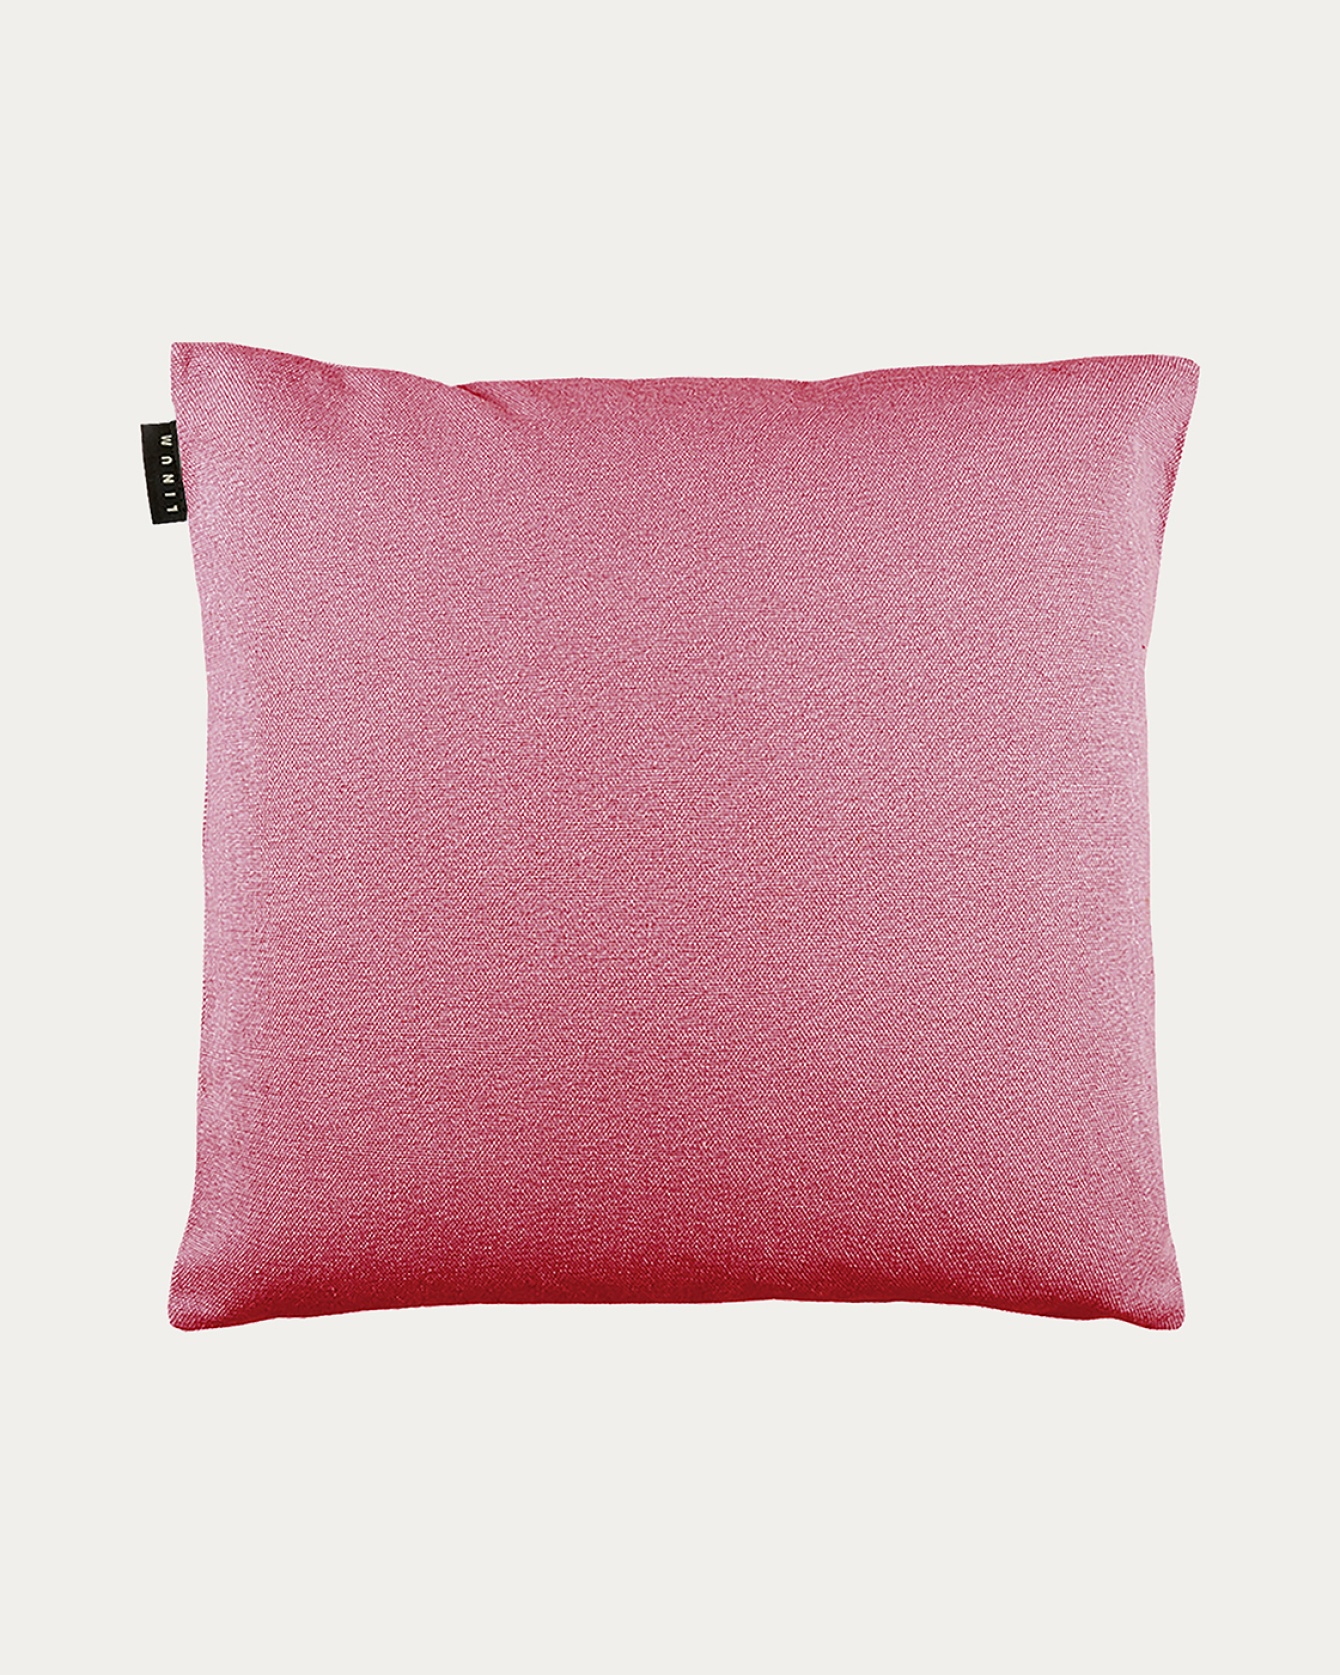 PEPPER Cushion cover 50x50 cm Cerise red